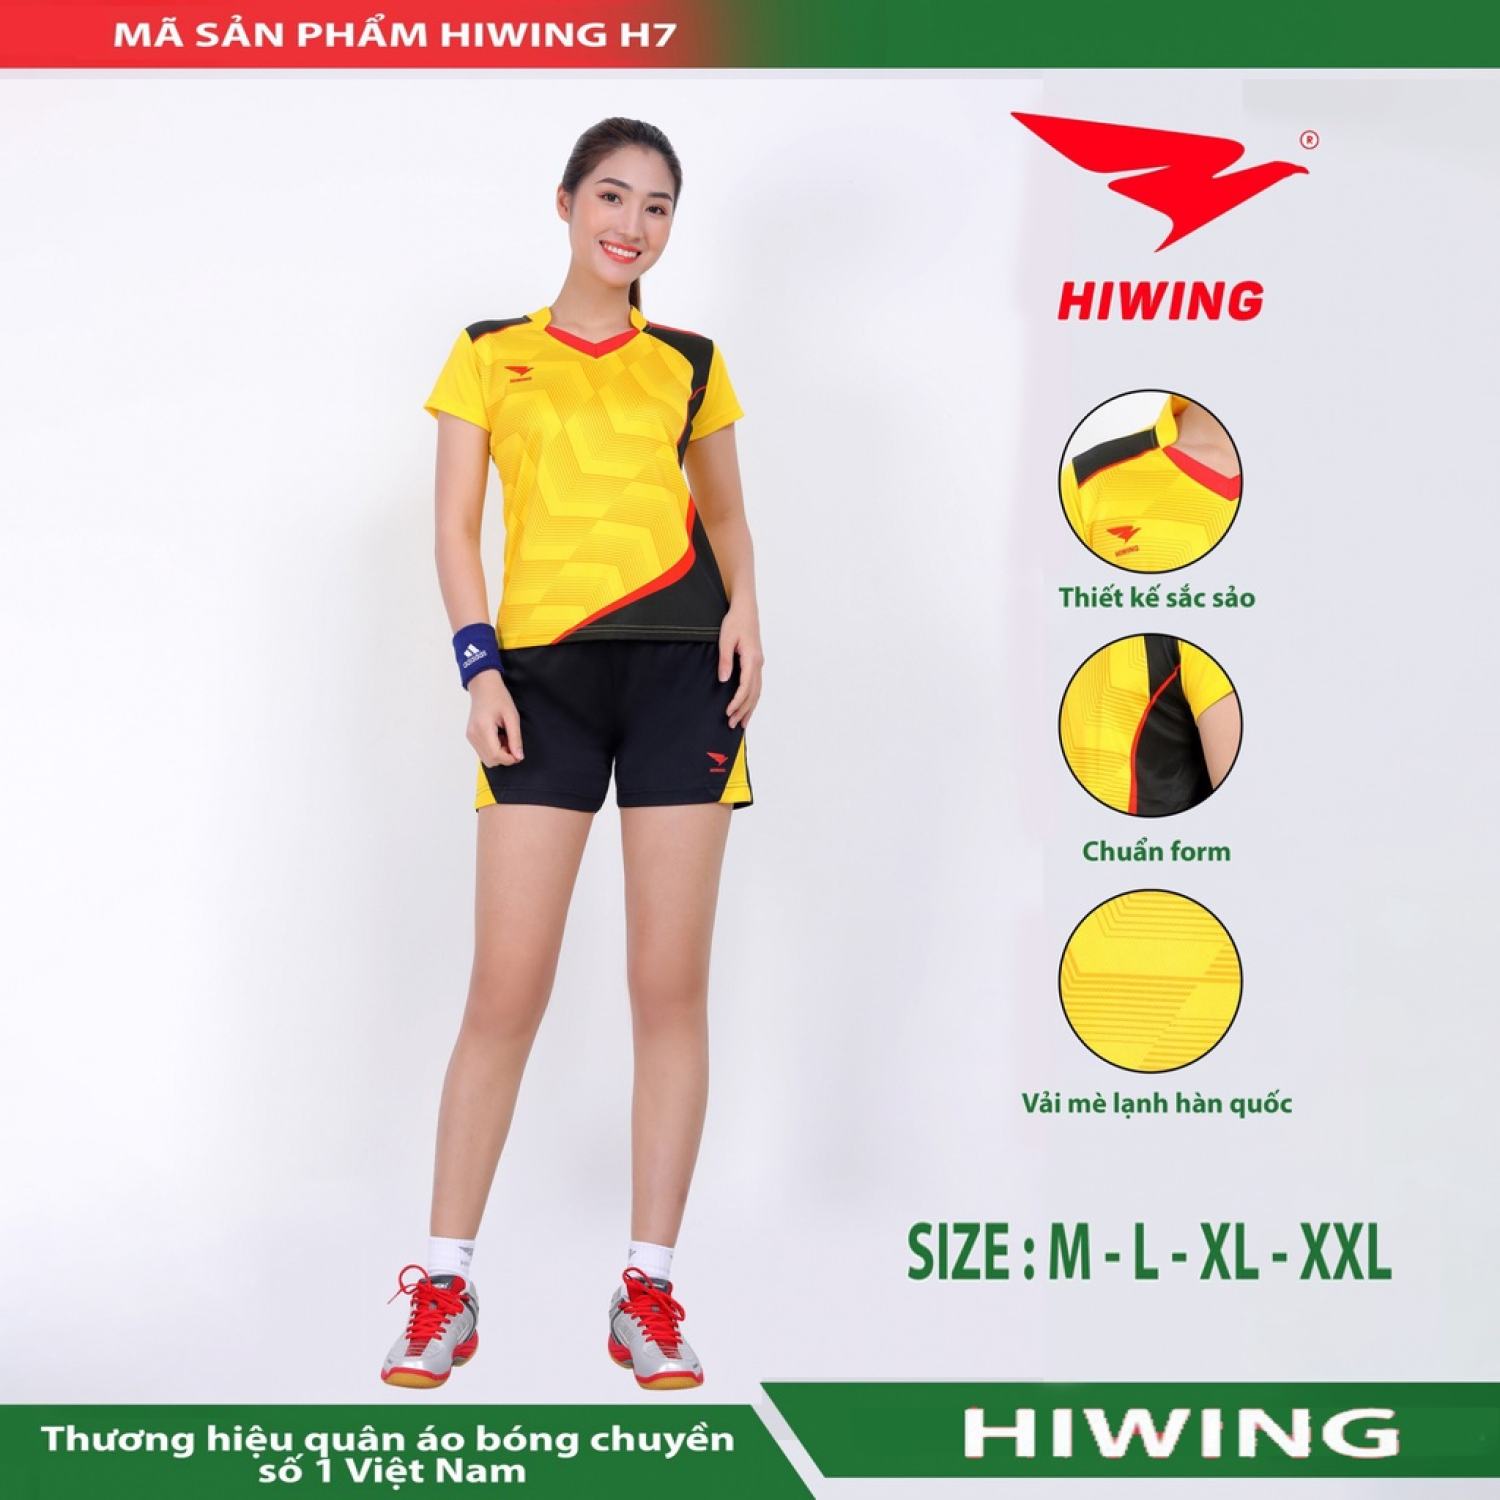 Quần áo bóng chuyền thương hiệu Hiwing H7 Nữ vải mềm, mát, thấm hút mồ hôi